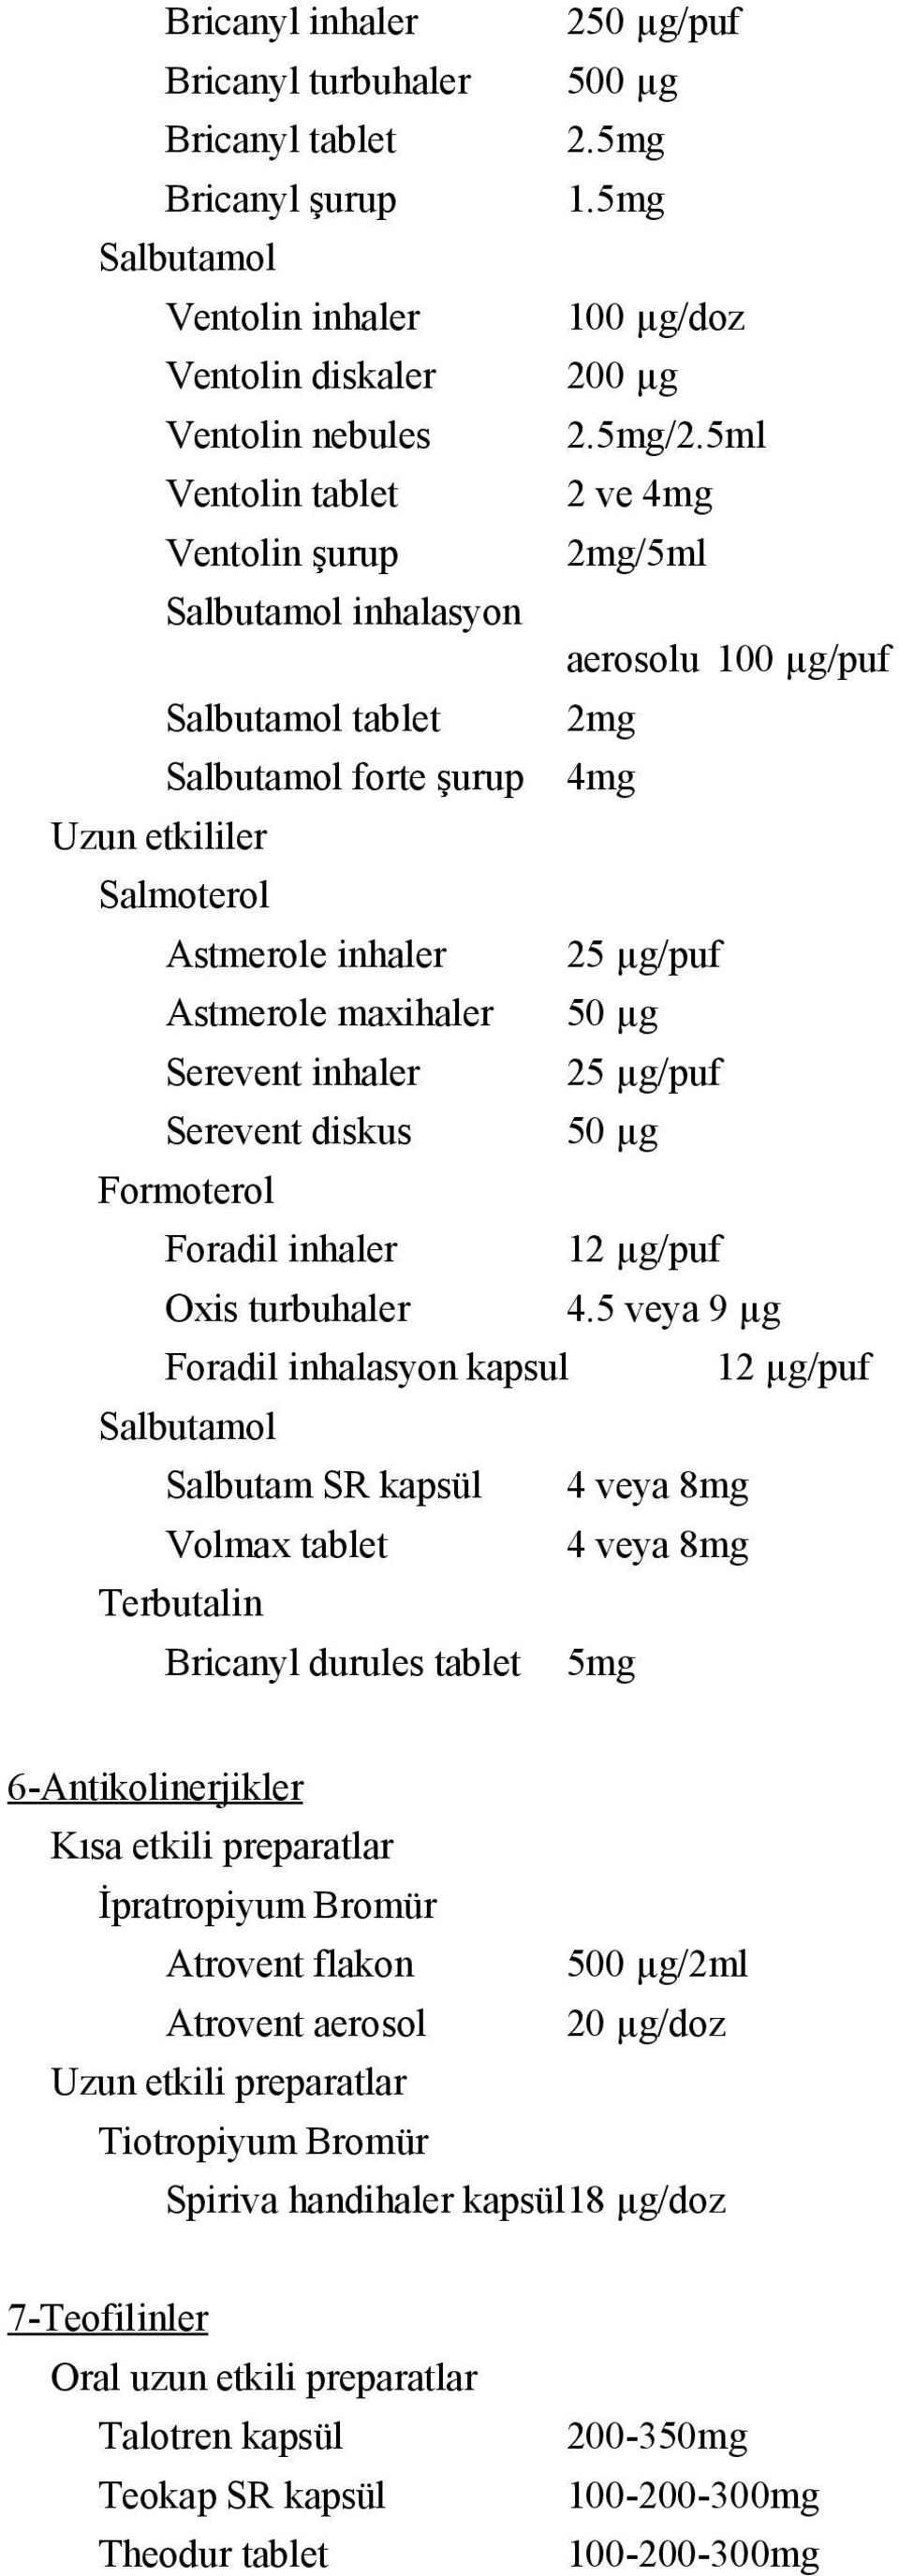 Astmerole maxihaler 50 µg Serevent inhaler 25 µg/puf Serevent diskus 50 µg Formoterol Foradil inhaler 12 µg/puf Oxis turbuhaler 4.